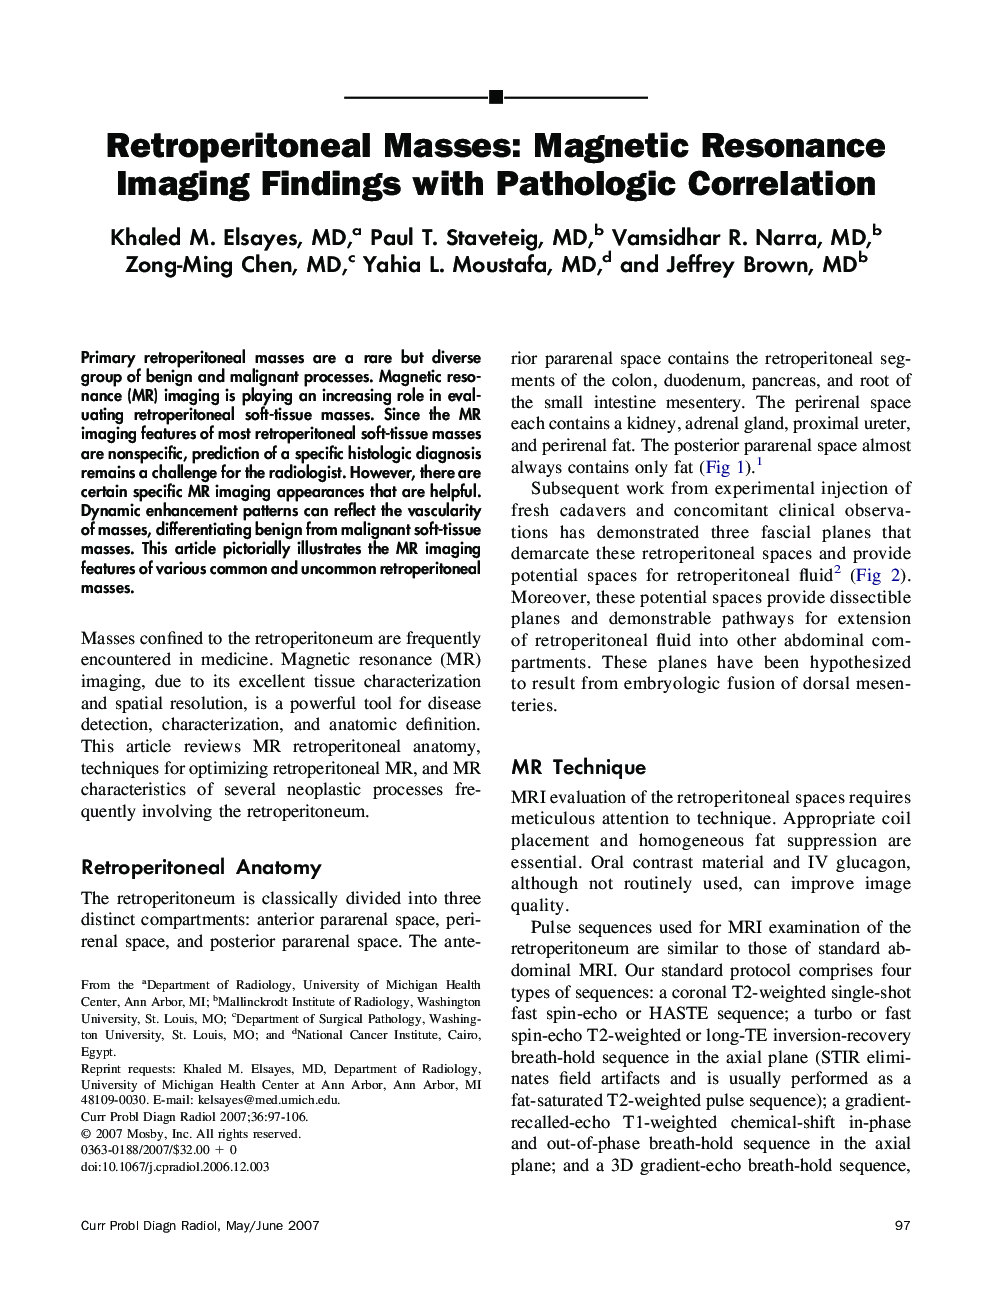 Retroperitoneal Masses: Magnetic Resonance Imaging Findings with Pathologic Correlation